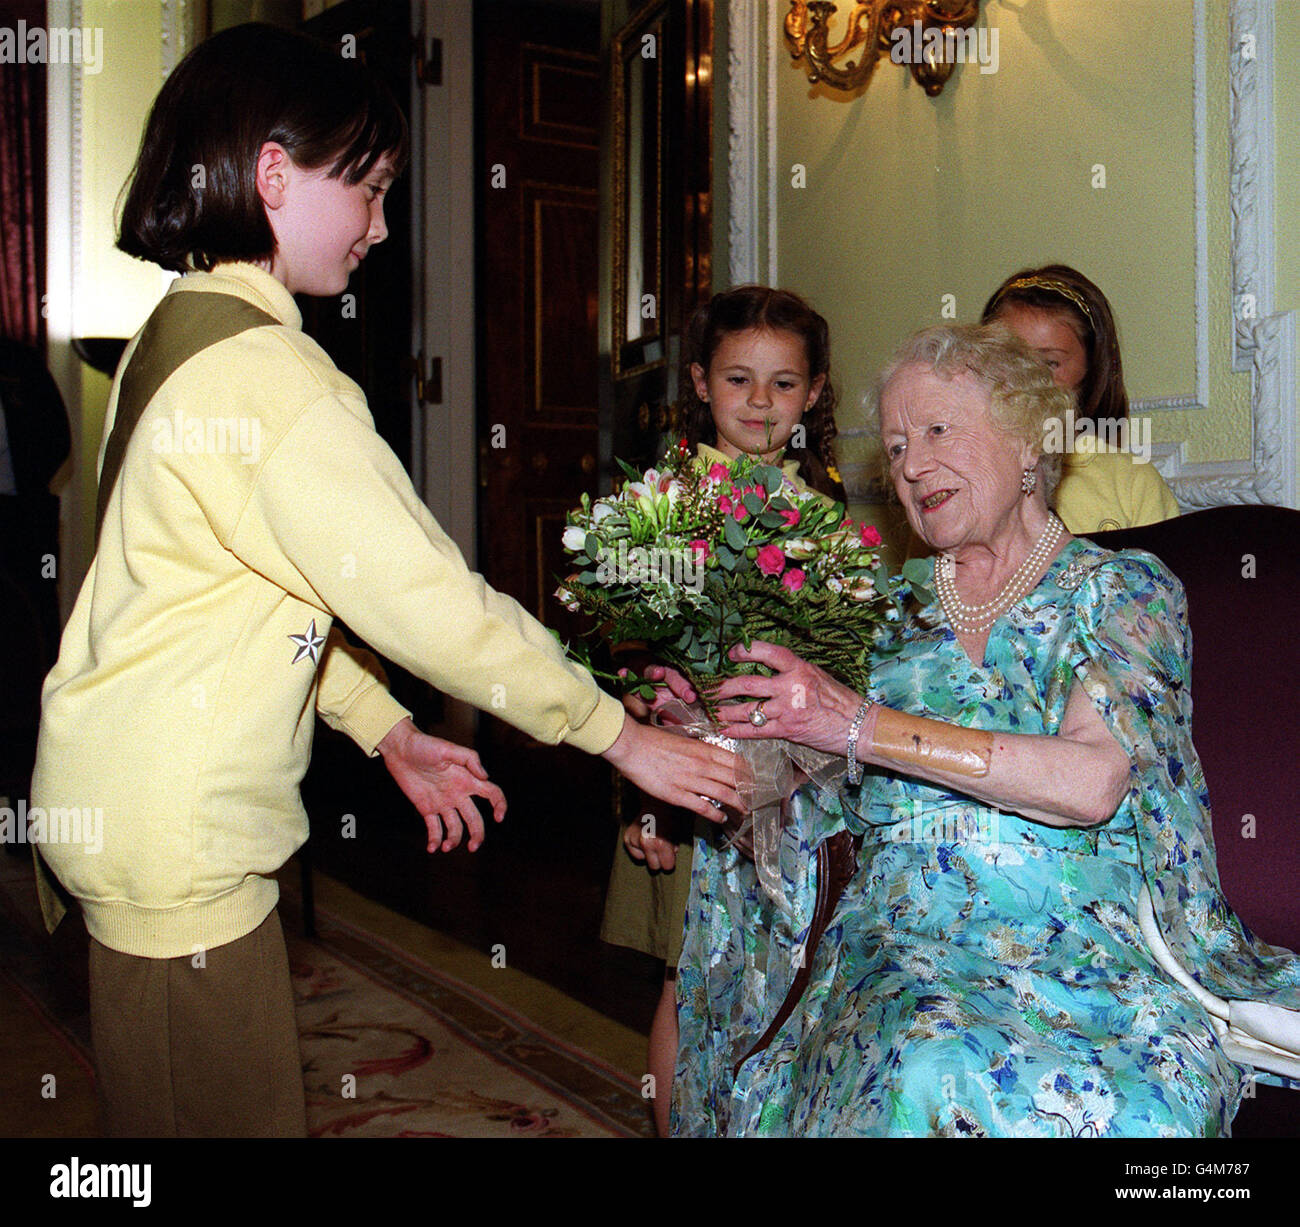 Königin Elizabeth, der Mutter der Königin, wird von Rebecca Heaton aus Beckenham, im Südosten Londons, ein Blumenstrauß überreicht, als sie am Empfang der Commonwealth-Kommissare der Guide Association im Marlborough House in London teilnahm. Stockfoto